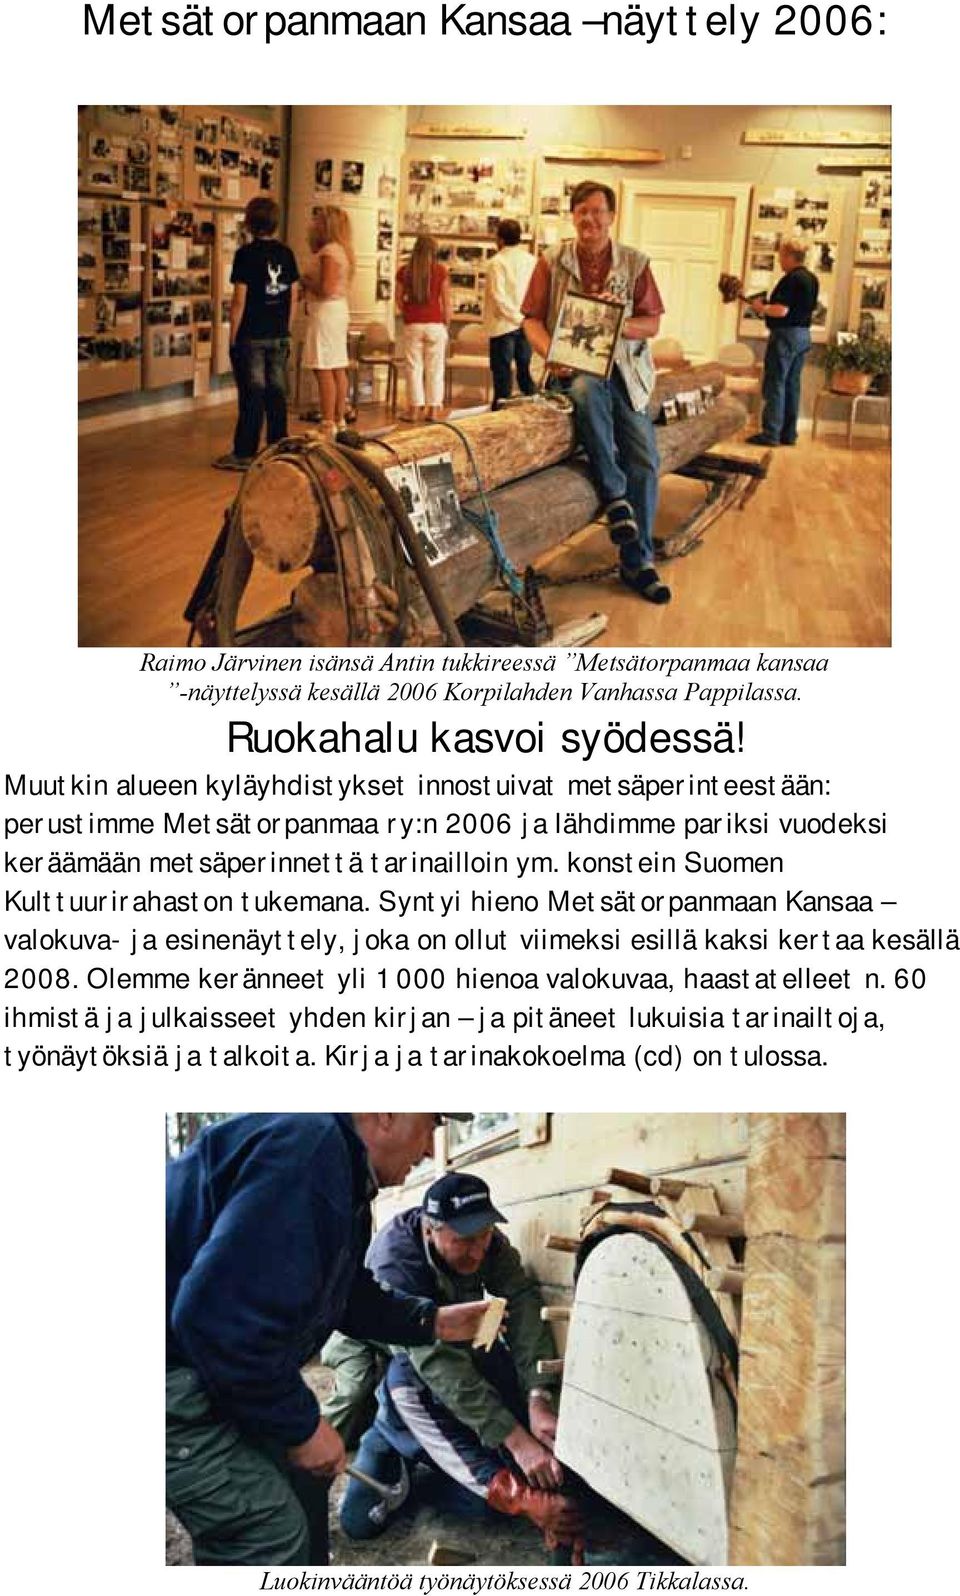 konstein Suomen Kulttuurirahaston tukemana. Syntyi hieno Metsätorpanmaan Kansaa valokuva- ja esinenäyttely, joka on ollut viimeksi esillä kaksi kertaa kesällä 2008.